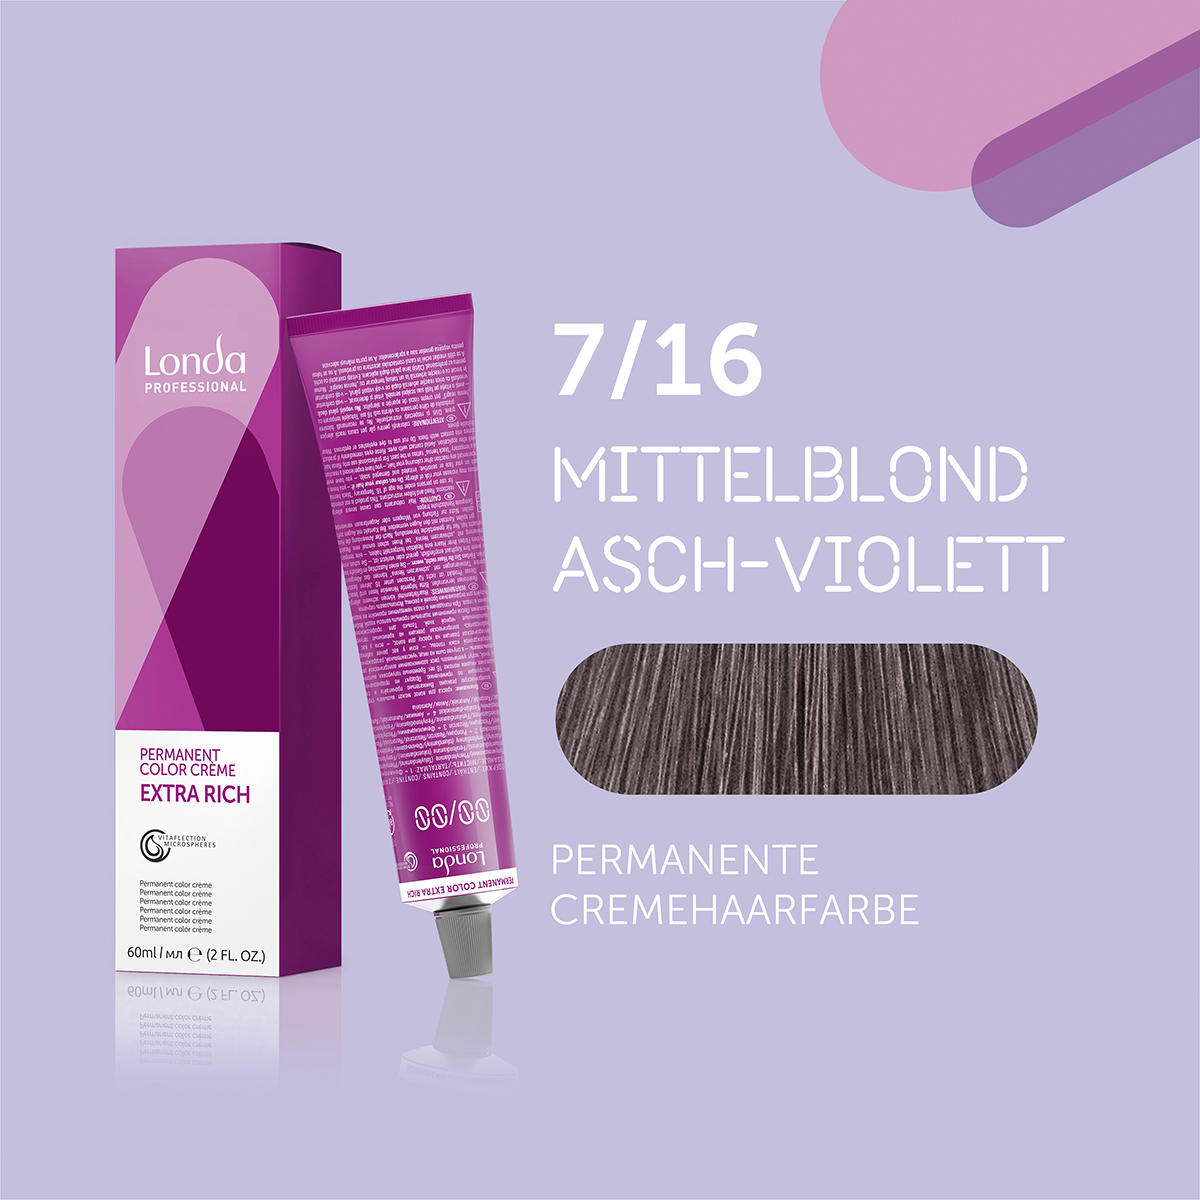 Londa Permanente Cremehaarfarbe Extra Rich 7/16 Mittelblond Asch Violett, Tube 60 ml